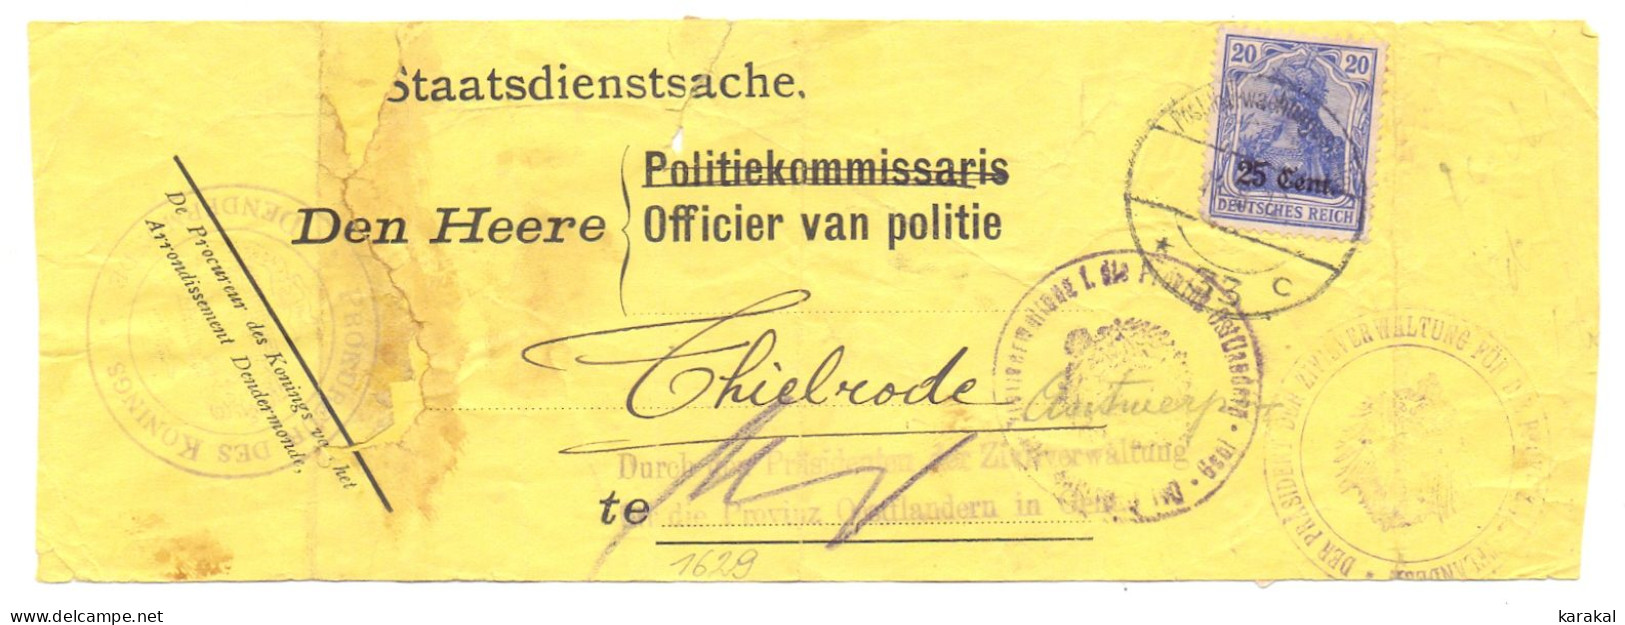 Belgique Occupation OC31 Germania 25c Bande Journal (?) Procureur Du Roi Procureur Des Konings Thielrode Temse - OC26/37 Etappengebied.